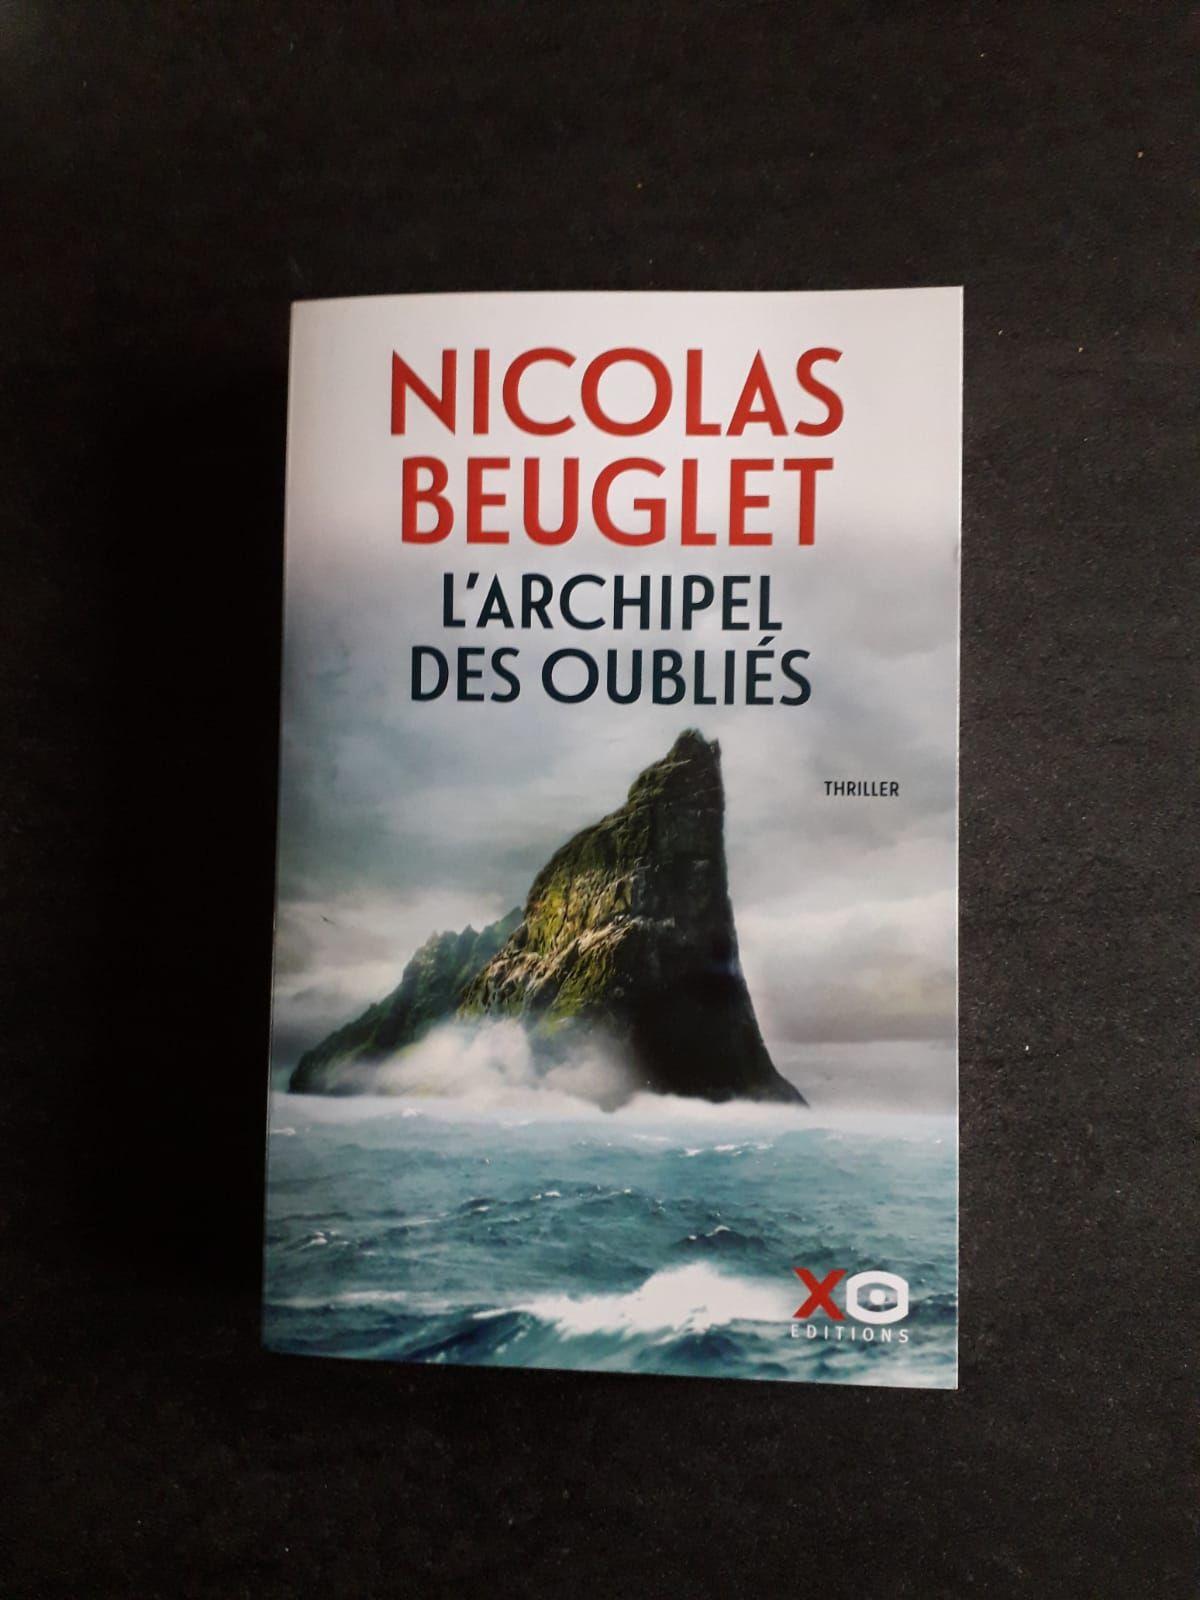 Le passager sans visage de Beuglet Nicolas  Achat livres - Ref R200121666  